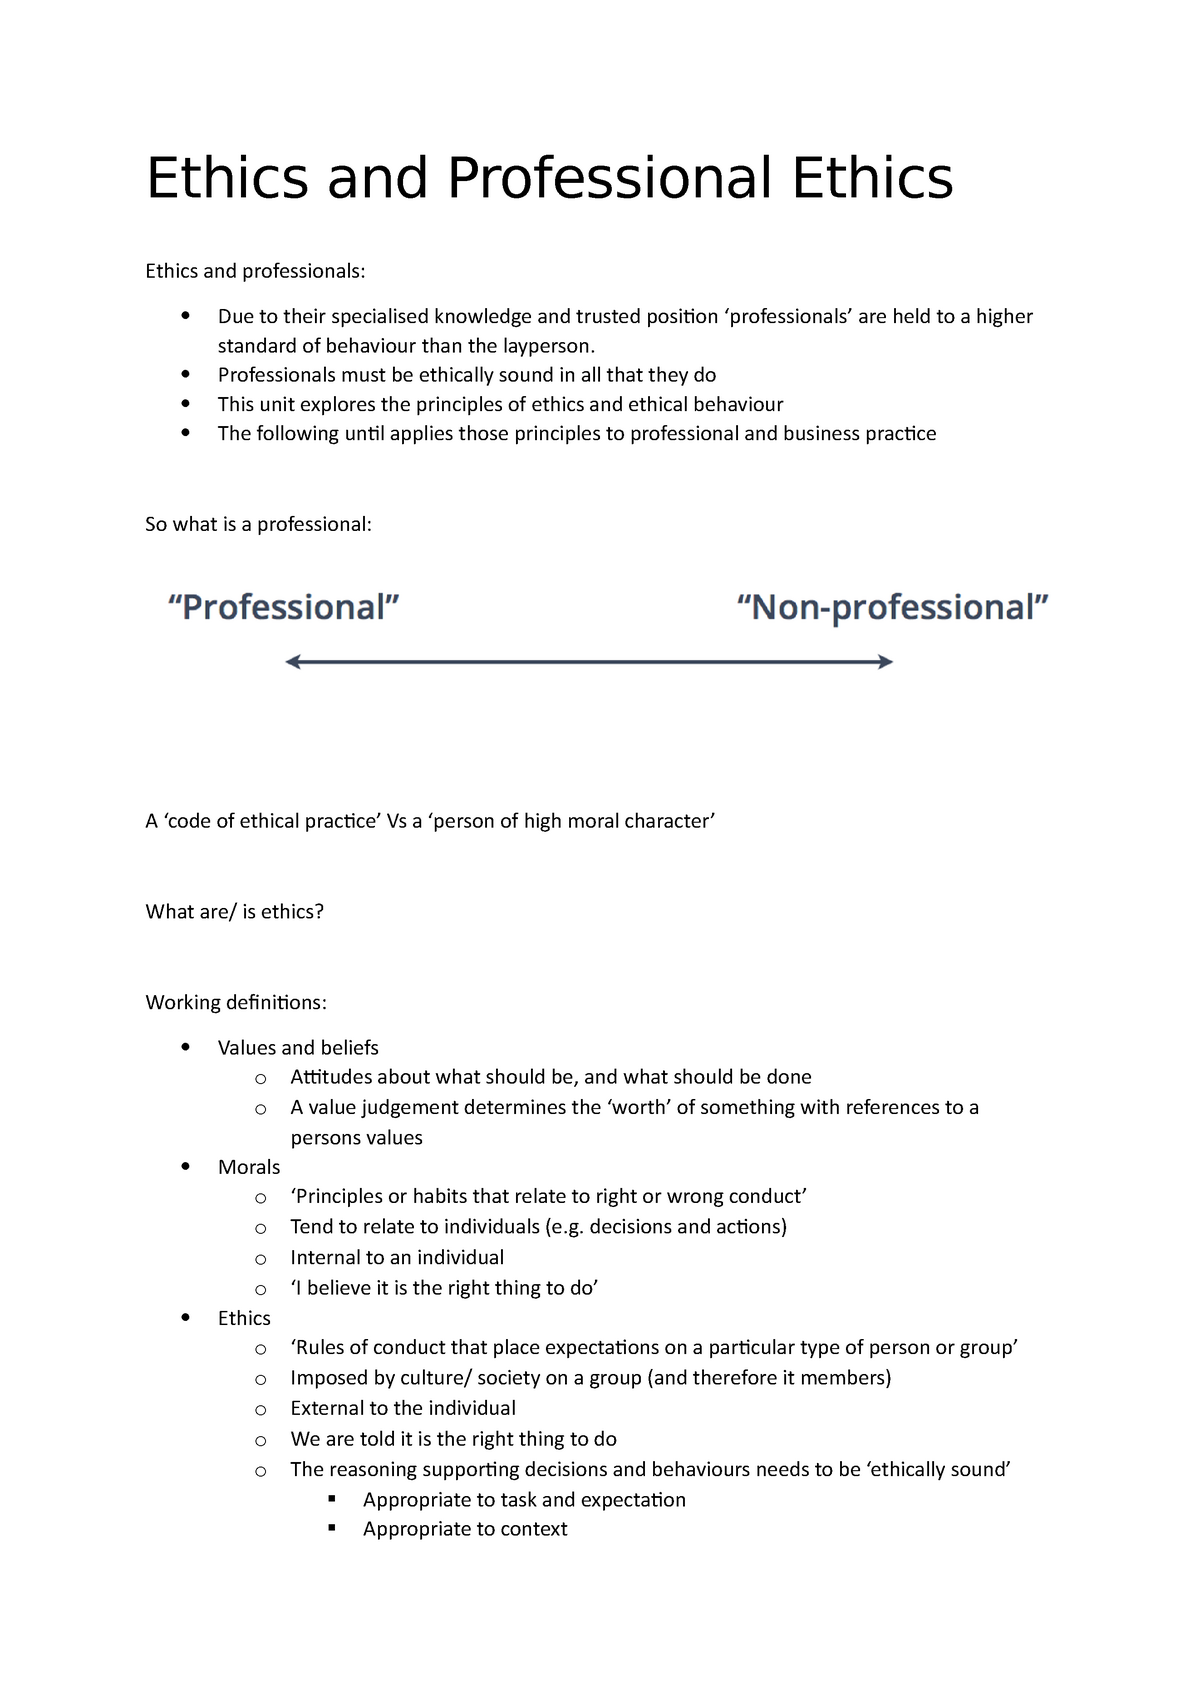 professionalism and ethics essay grade 11 memorandum